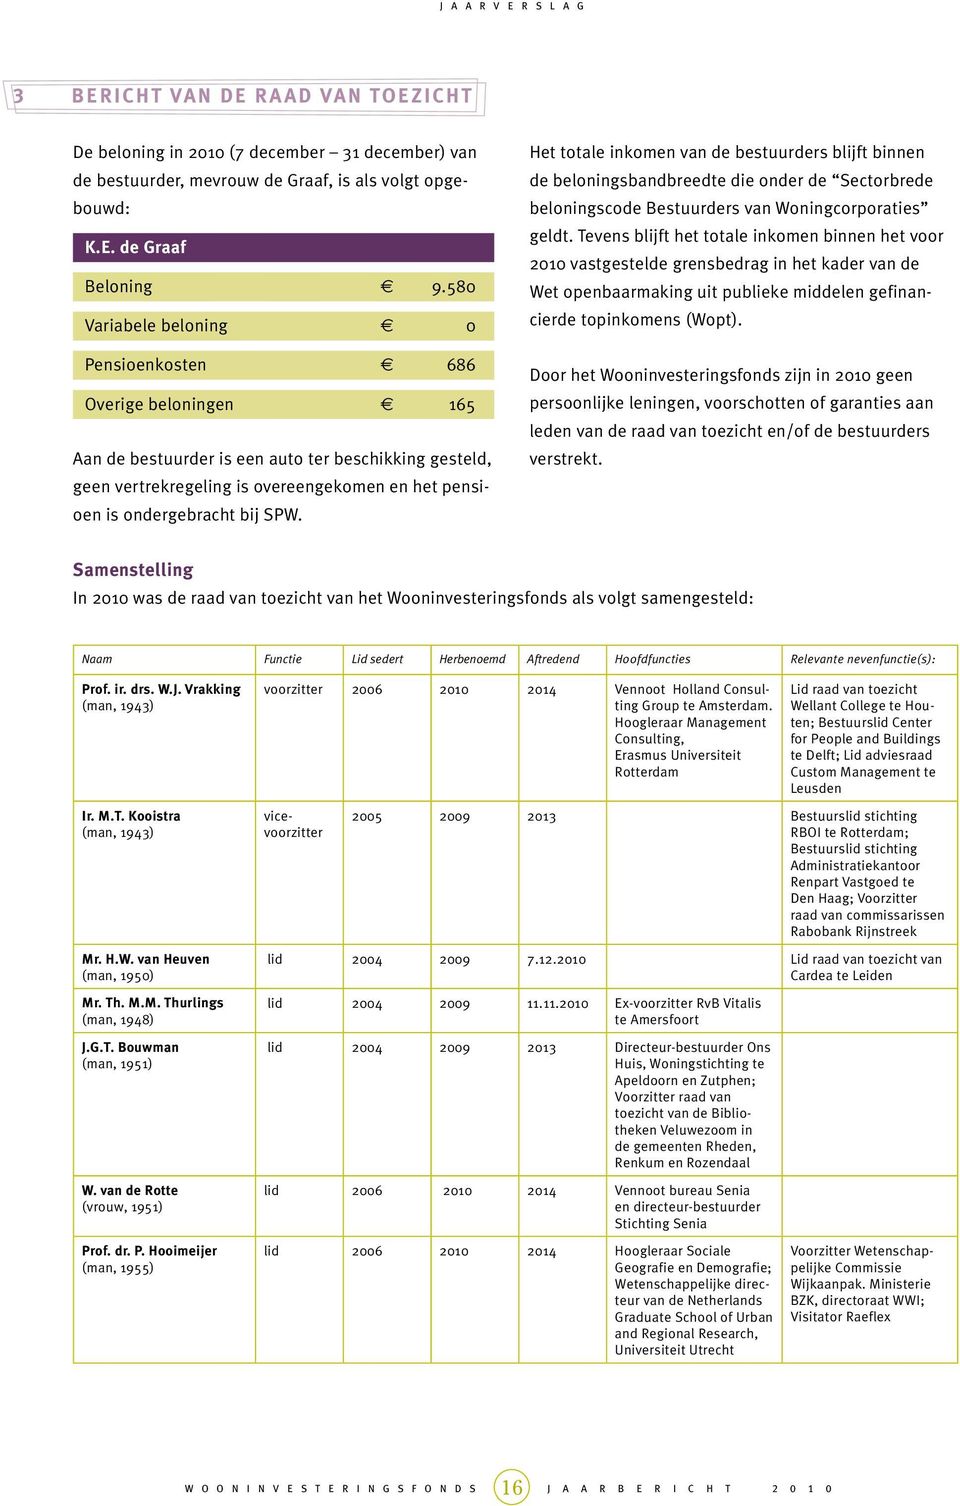 SPW. Het totale inkomen van de bestuurders blijft binnen de beloningsbandbreedte die onder de Sectorbrede beloningscode Bestuurders van Woningcorporaties geldt.